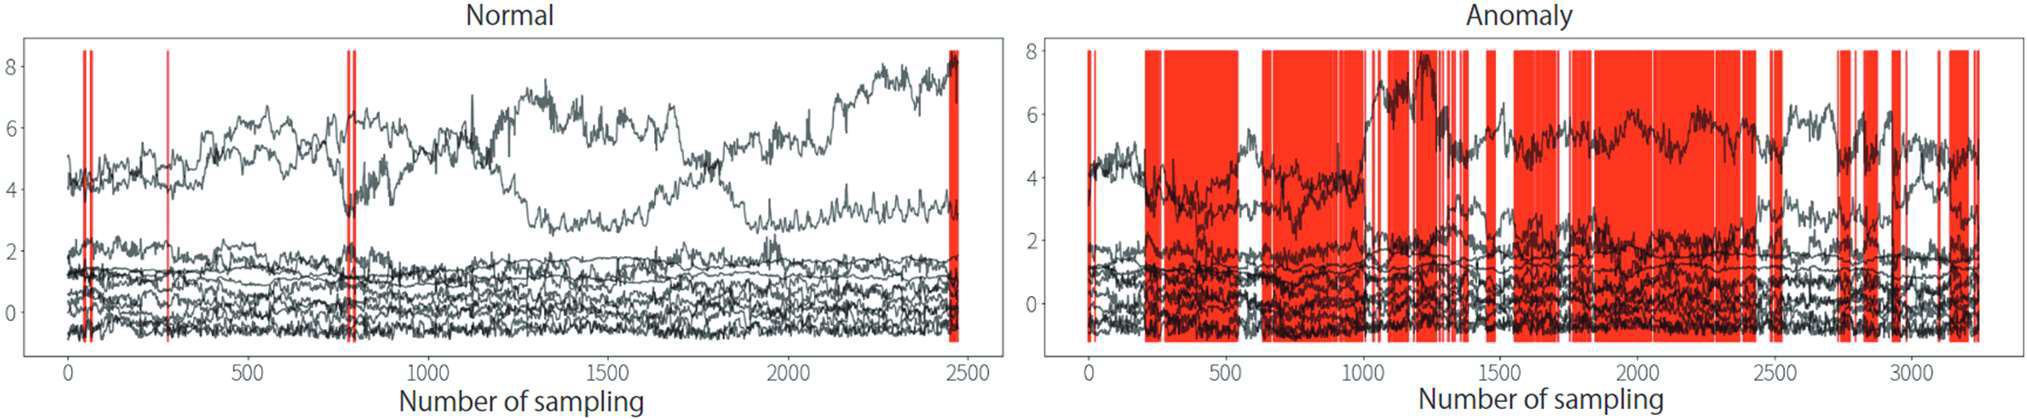 14種類の特徴量とモデルが異常と判断した時刻のフラグ（赤）を重ね，特徴量の推移と検知の対応を示した図．左図が正常な締結データへ適用した際のデータ，右図が異常な締結データへ適用した際のグラフ　A plot of the 14 feature values and the flag (red) of the time when the model detects an anomaly. It shows the correspondence between the transition of the feature values and the detection timing. The left graph shows the results when the model is applied tonormal fastening data, and the right graph shows the results when the model is applied to abnormal fastening data.